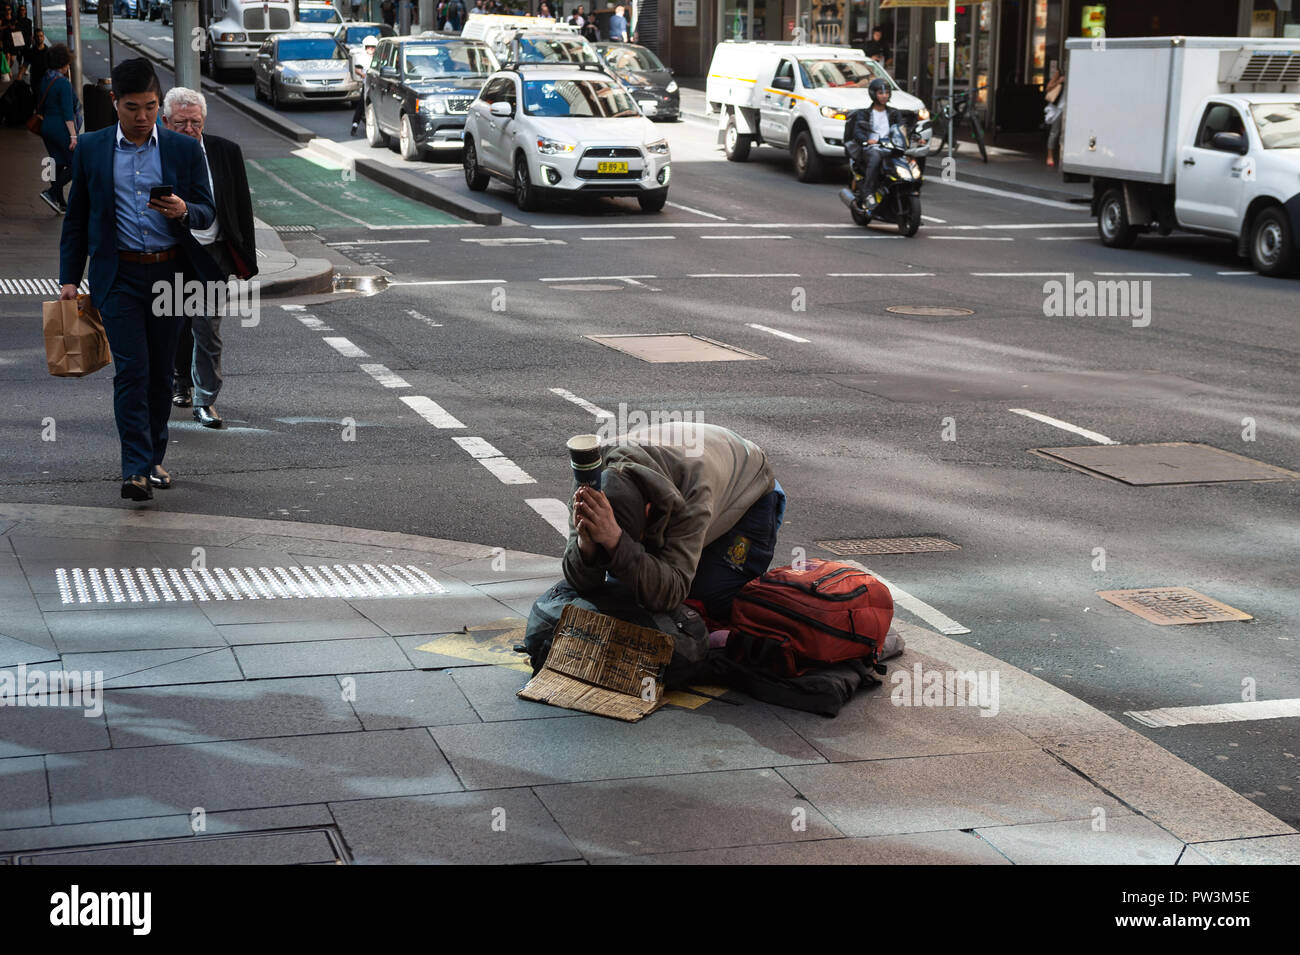 19.09.2018, Sydney, New South Wales, Australien - ein obdachloser Mann wird gesehen, kniend auf dem Bürgersteig in der Innenstadt von Sydney betteln um etwas Geld. Stockfoto